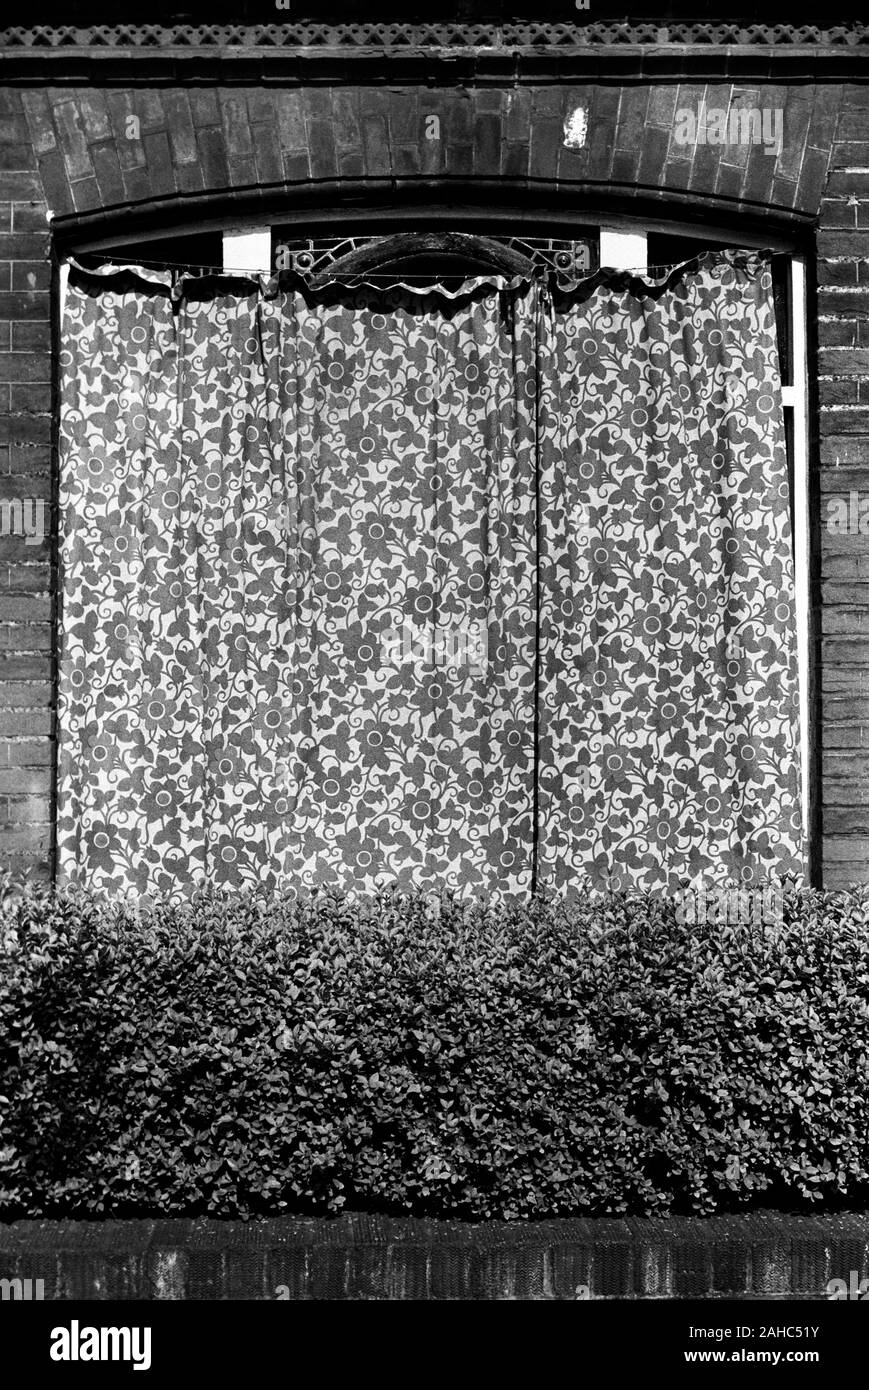 Außenansicht des Hauses mit Vorhang über das Fenster gezogen, um Schäden durch starkes Sonnenlicht zu verhindern. Die Fensterrahmen wurden kürzlich neu lackiert. Die Außenvorhänge sollen die neue Lackierung schützen. London 1971 1970s UK HOMER SYKES Stockfoto